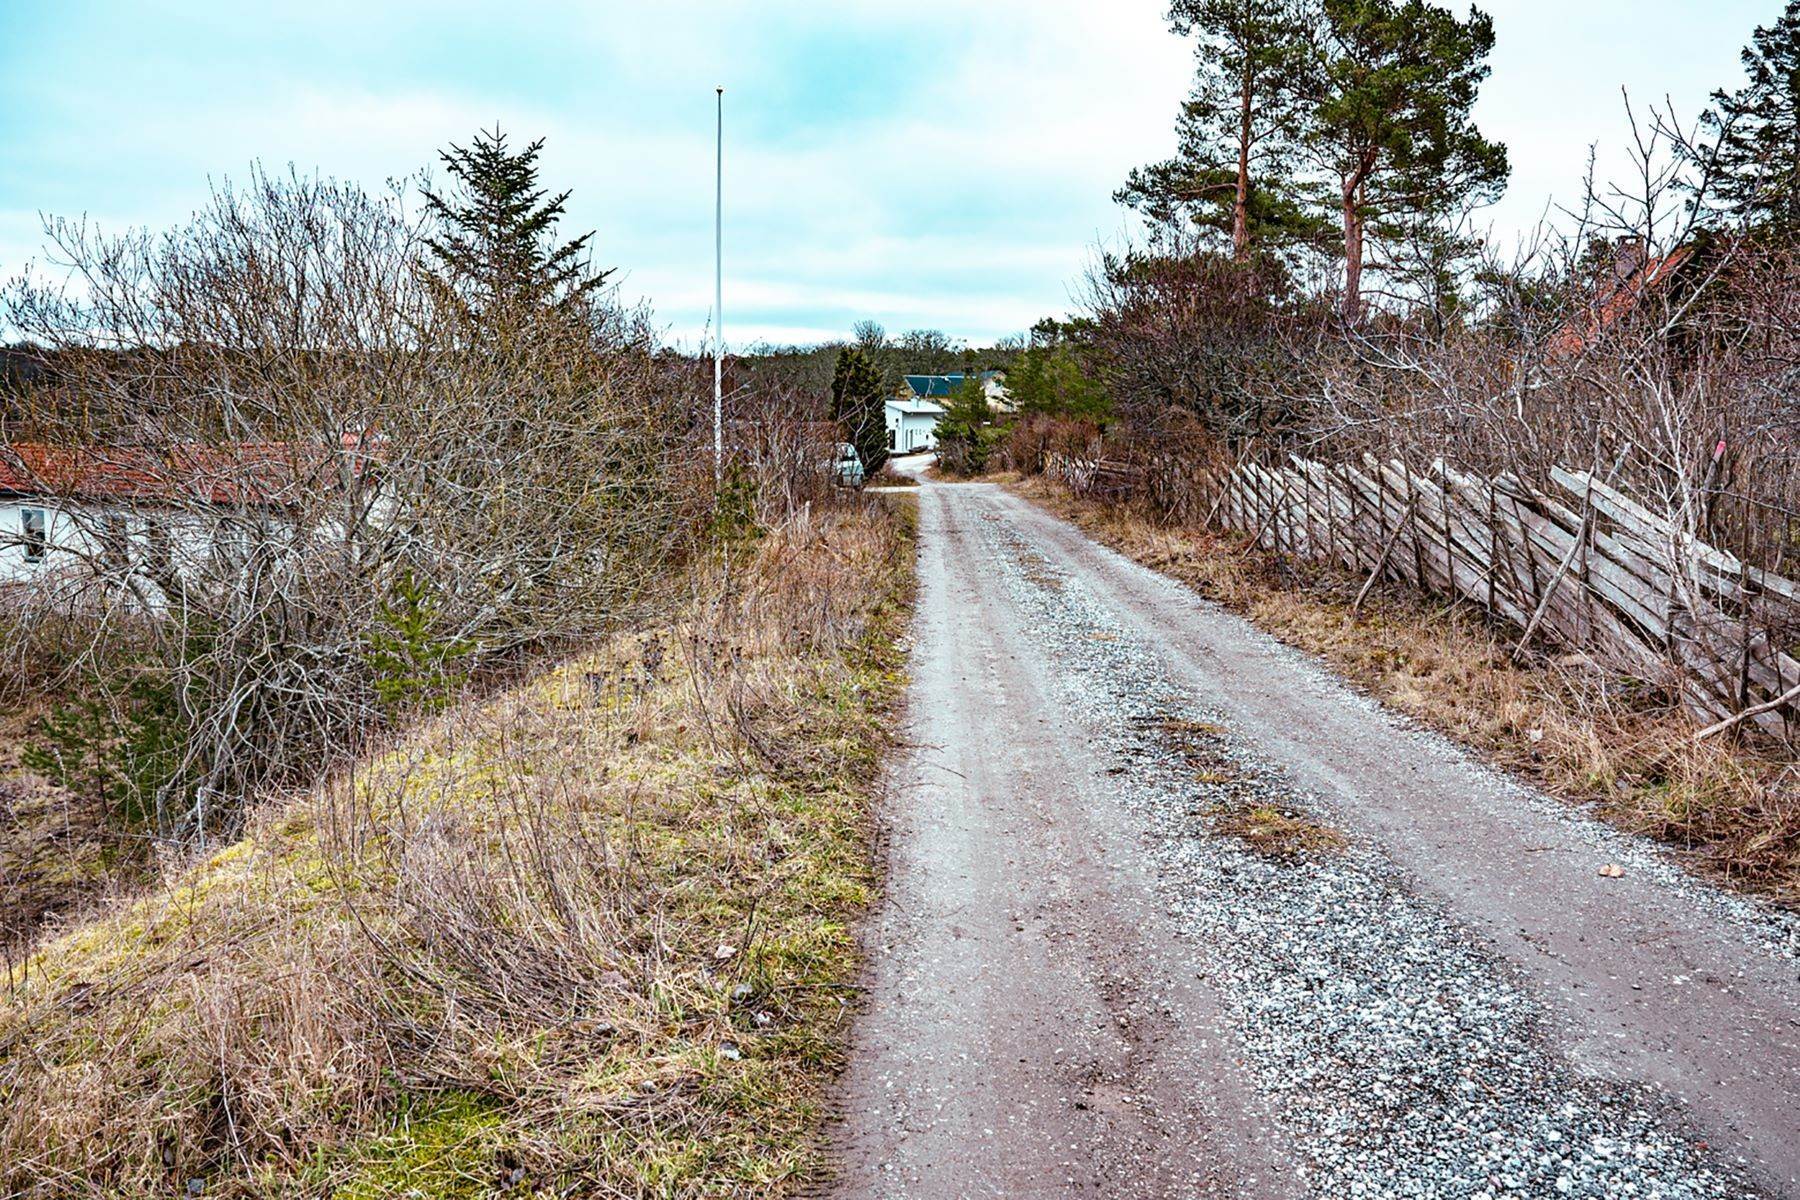 12. Land for Sale at Högklint Timjevägen 6 Other Sweden, Other Areas In Sweden 62261 Sweden